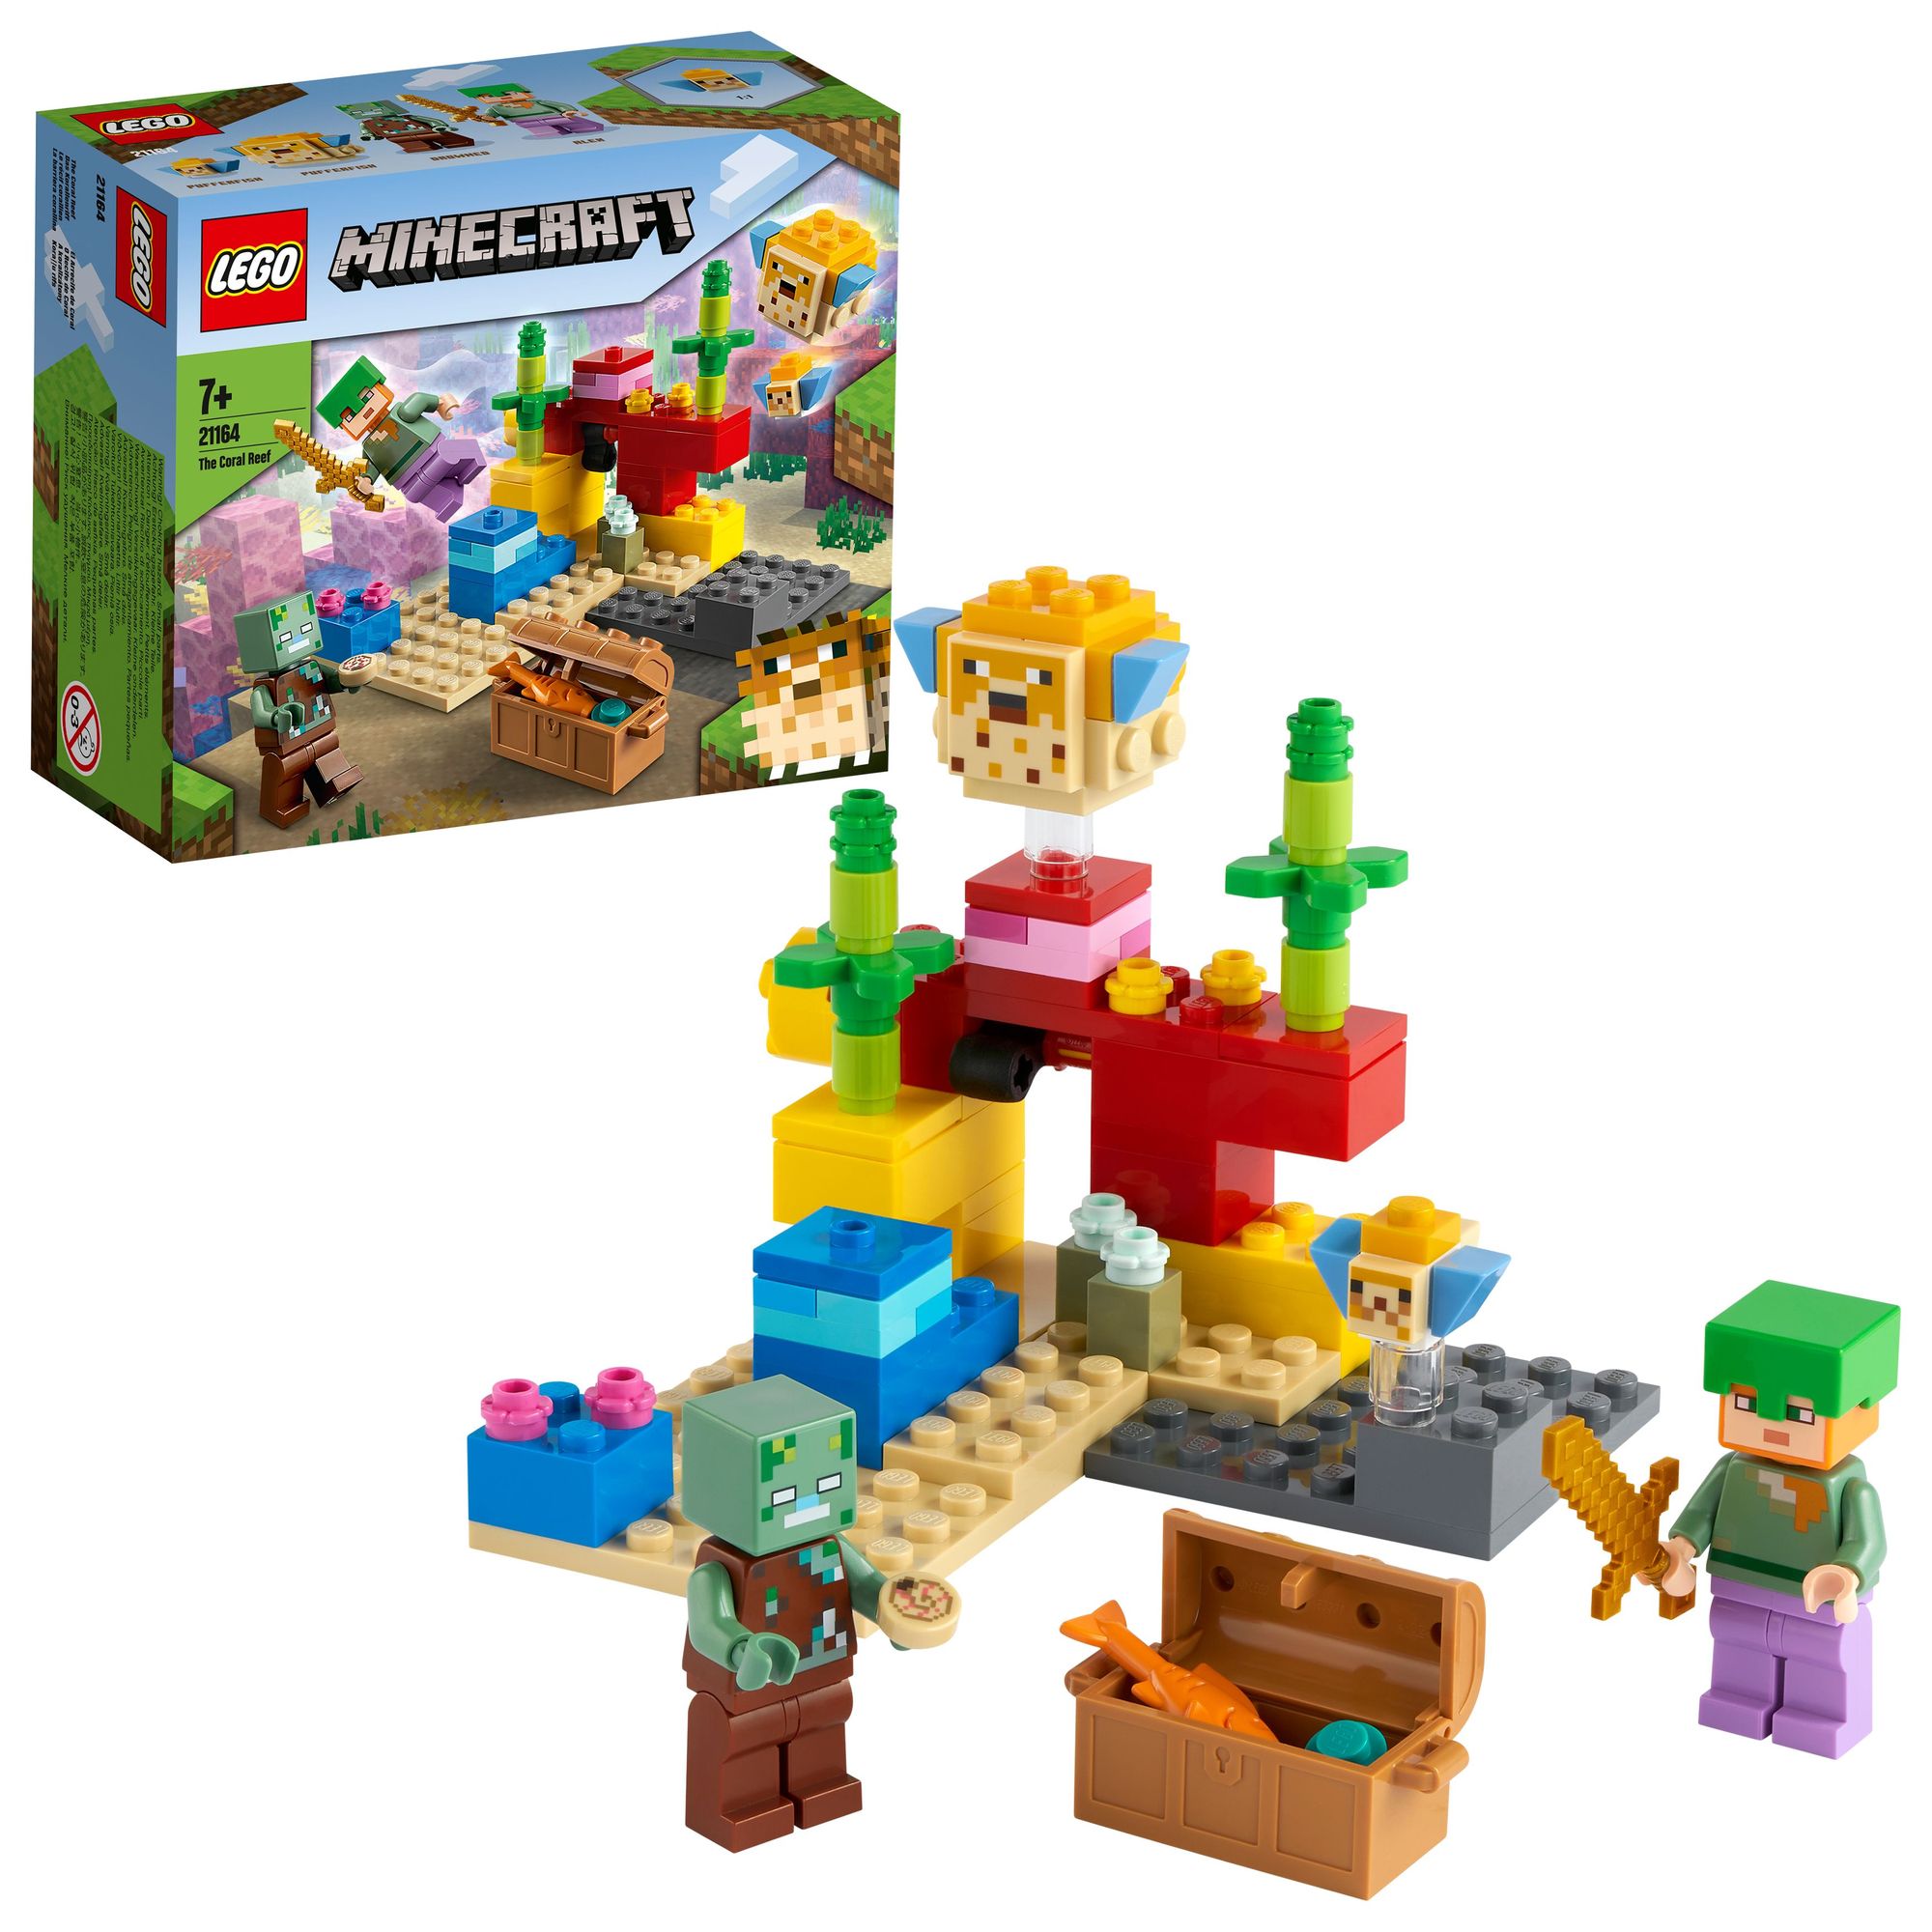 21164 - Set Spielwaren Alex mit Korallenriff, Minifiguren\' LEGO kaufen und Das Minecraft